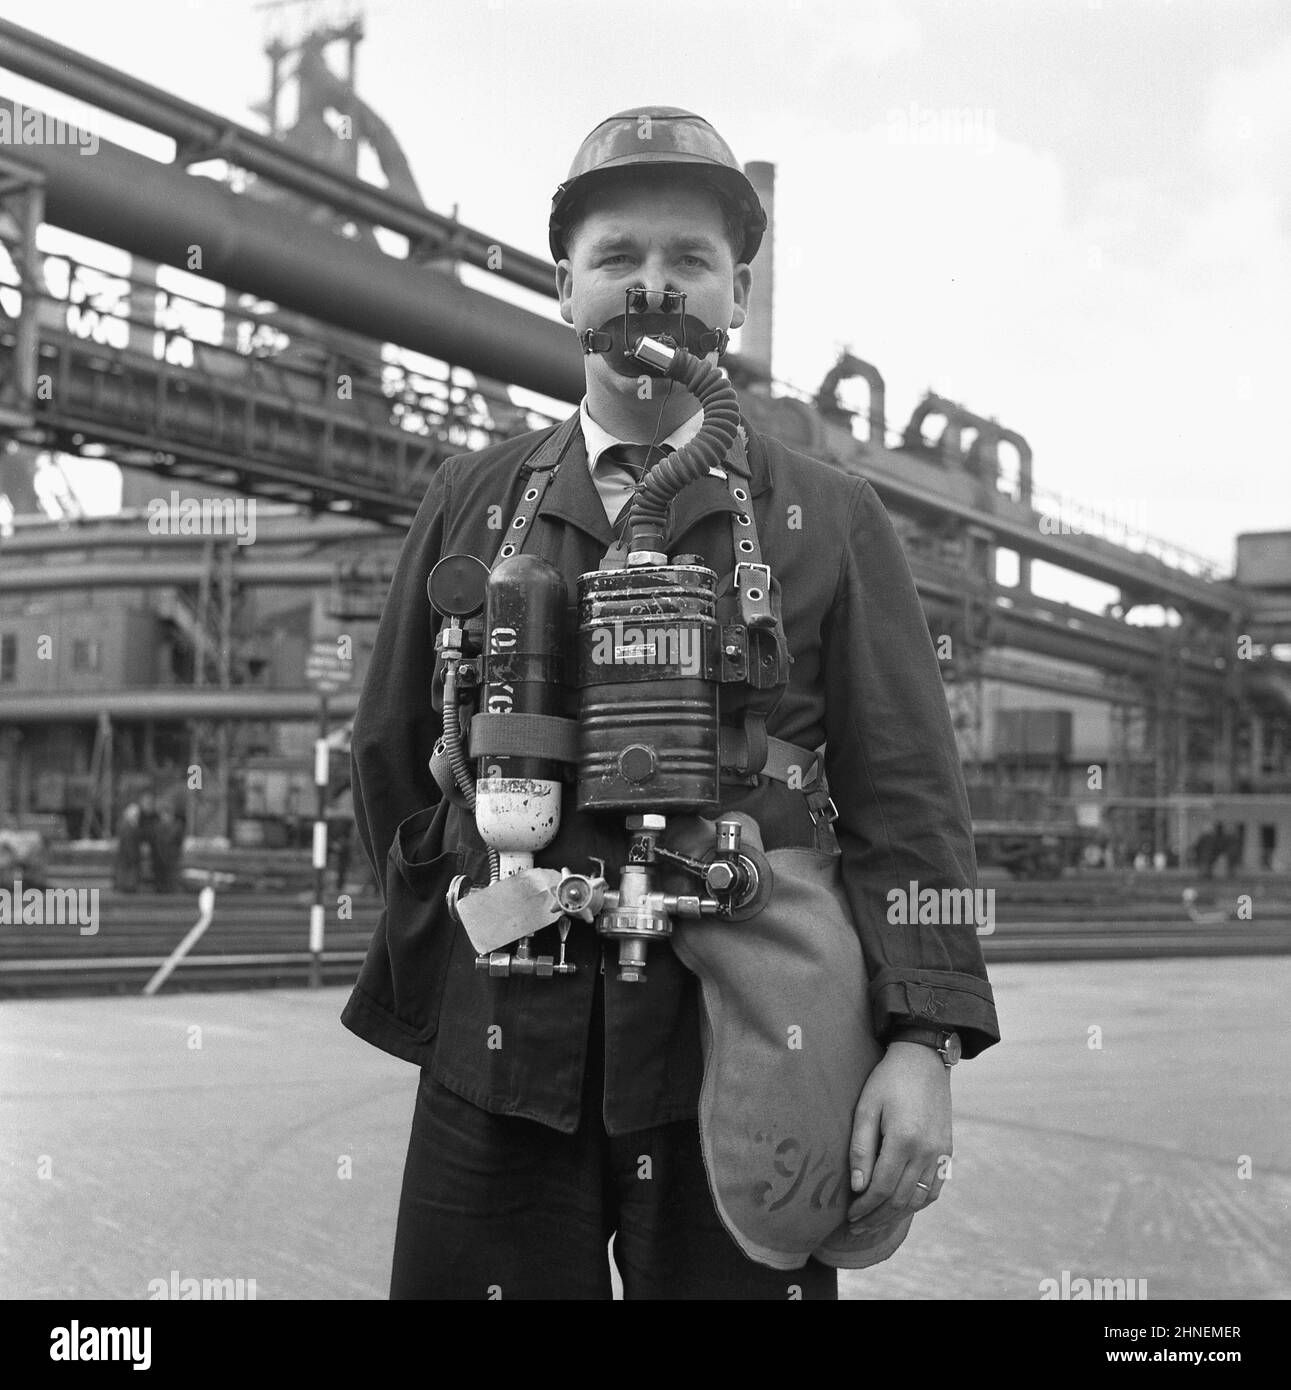 Fin 1950s, historique, en dehors d'une usine de fabrication de l'acier, un travailleur portant le dernier appareil respiratoire d'urgence - connu sous le nom de resreniflard - qui serait utilisé sur le site en cas d'explosion, rendant l'air dangereux pour la vie. Ce reniflard avait deux bouteilles d'oxygène, un ballon respiratoire et un embout buccal. De grands sites industriels, comme celui-ci à Abbey Works, Port Talbot, pays de Galles, Royaume-Uni, les plus grands aciéries d'Europe, ont dû être préparés. Banque D'Images